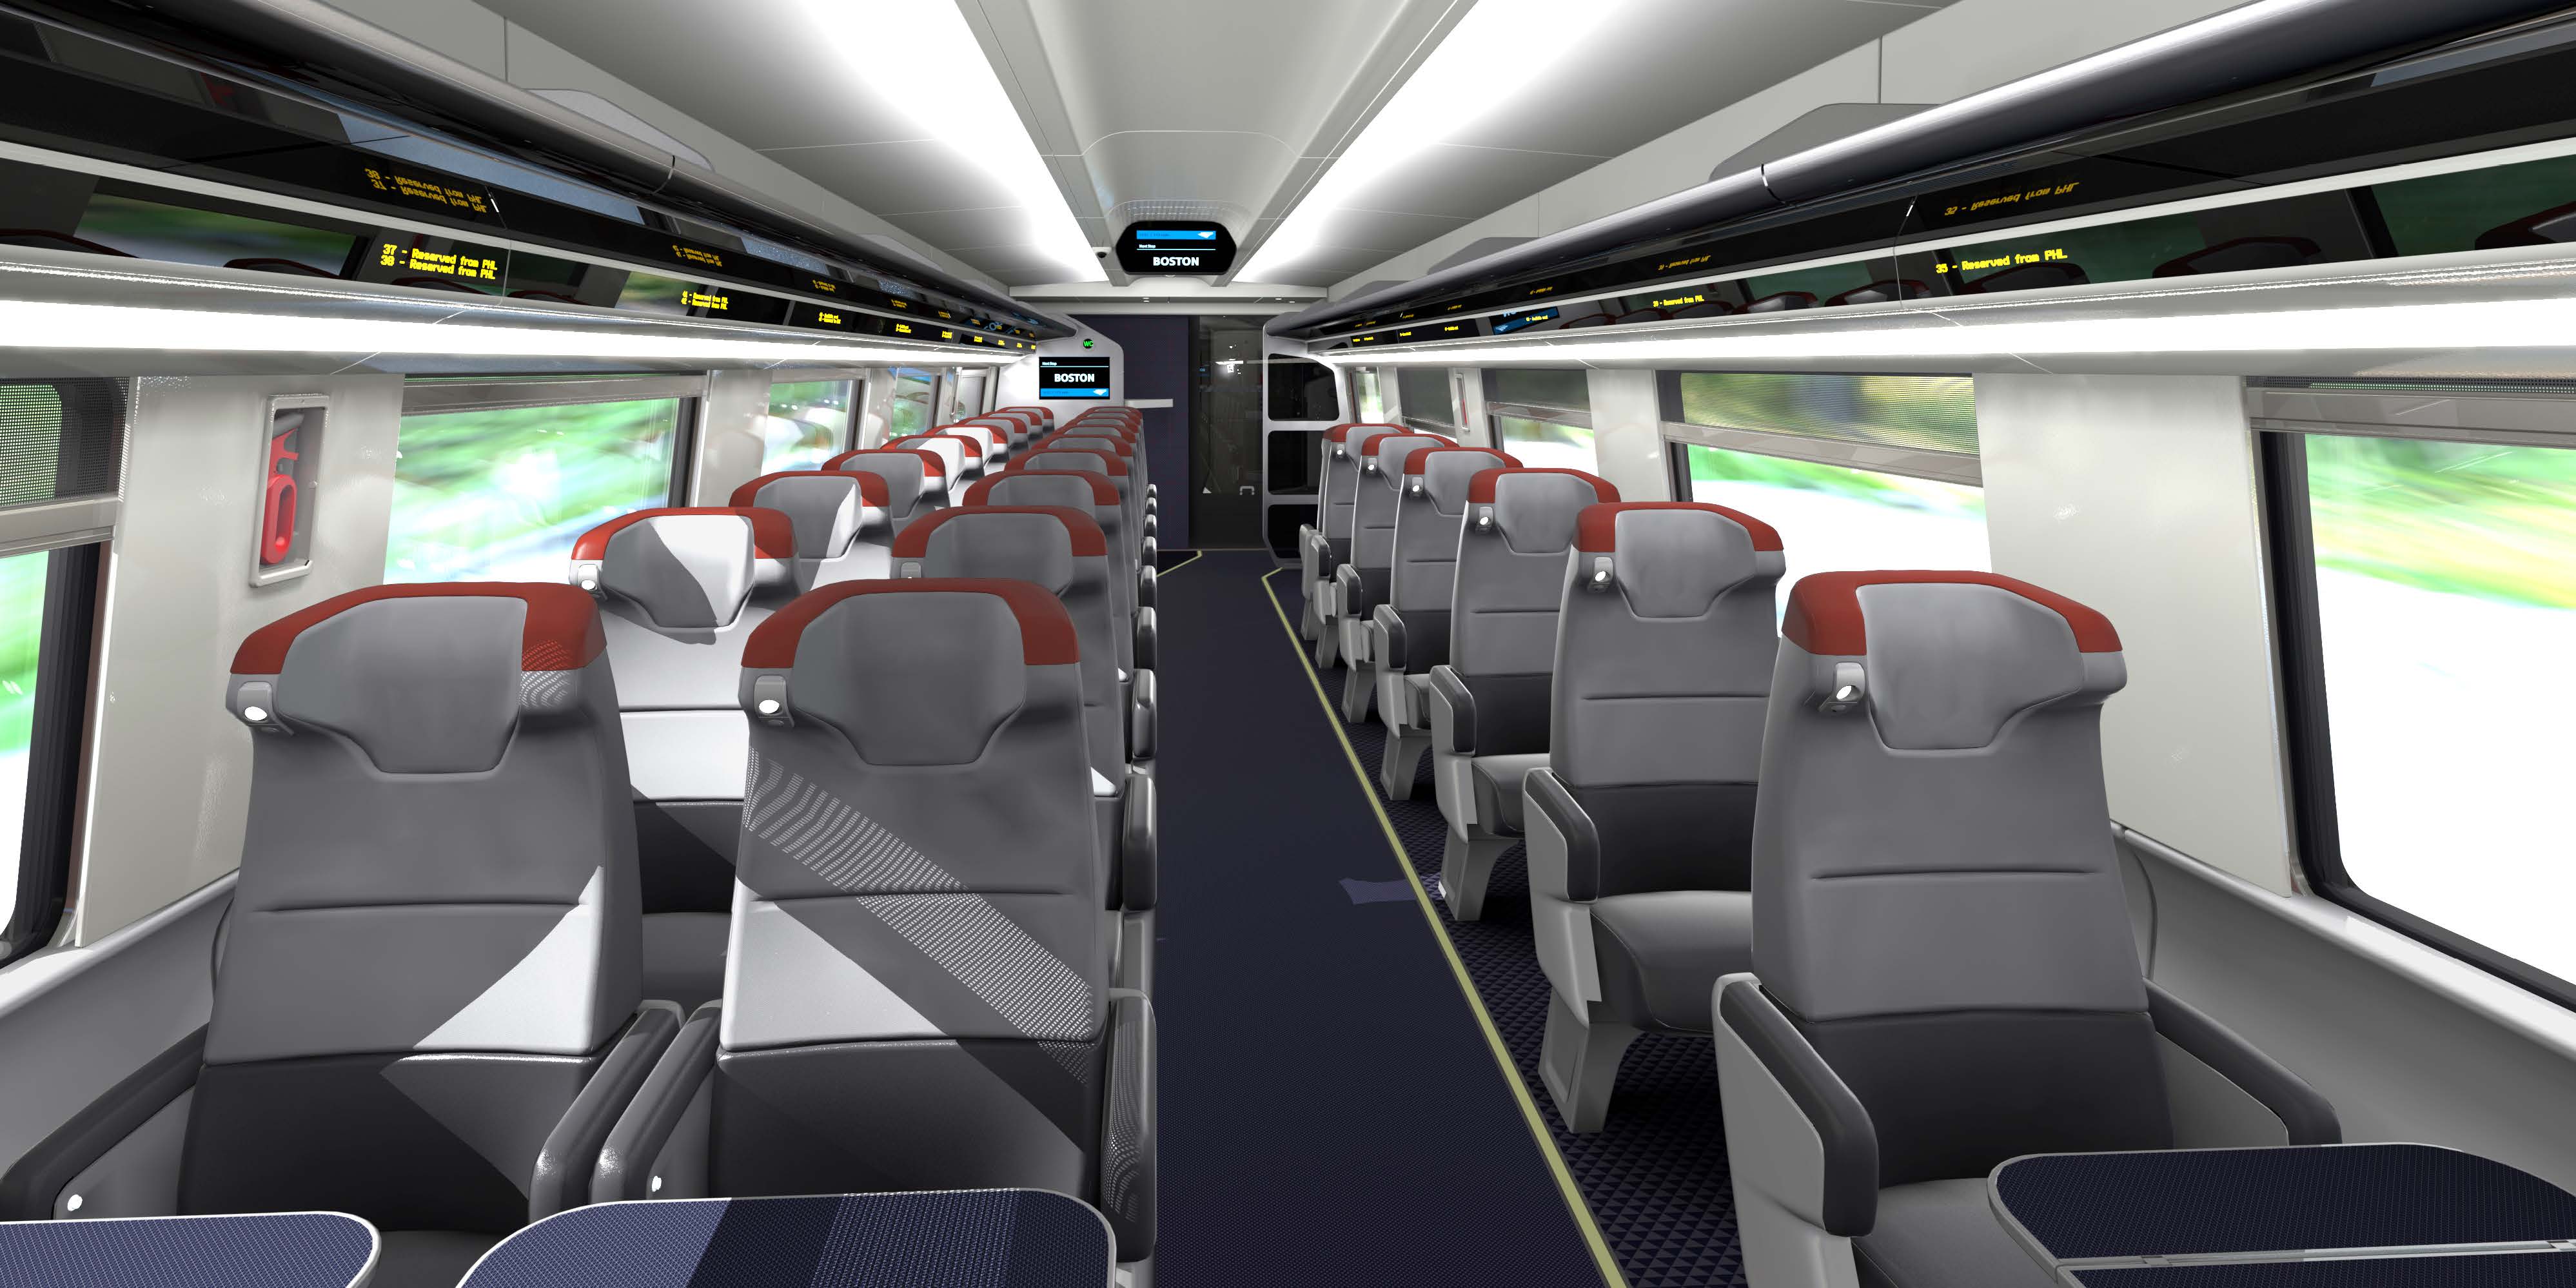 Î‘Ï€Î¿Ï„Î­Î»ÎµÏƒÎ¼Î± ÎµÎ¹ÎºÏŒÎ½Î±Ï‚ Î³Î¹Î± Amtrak Reveals Modern Interiors on New Acela Express Fleet